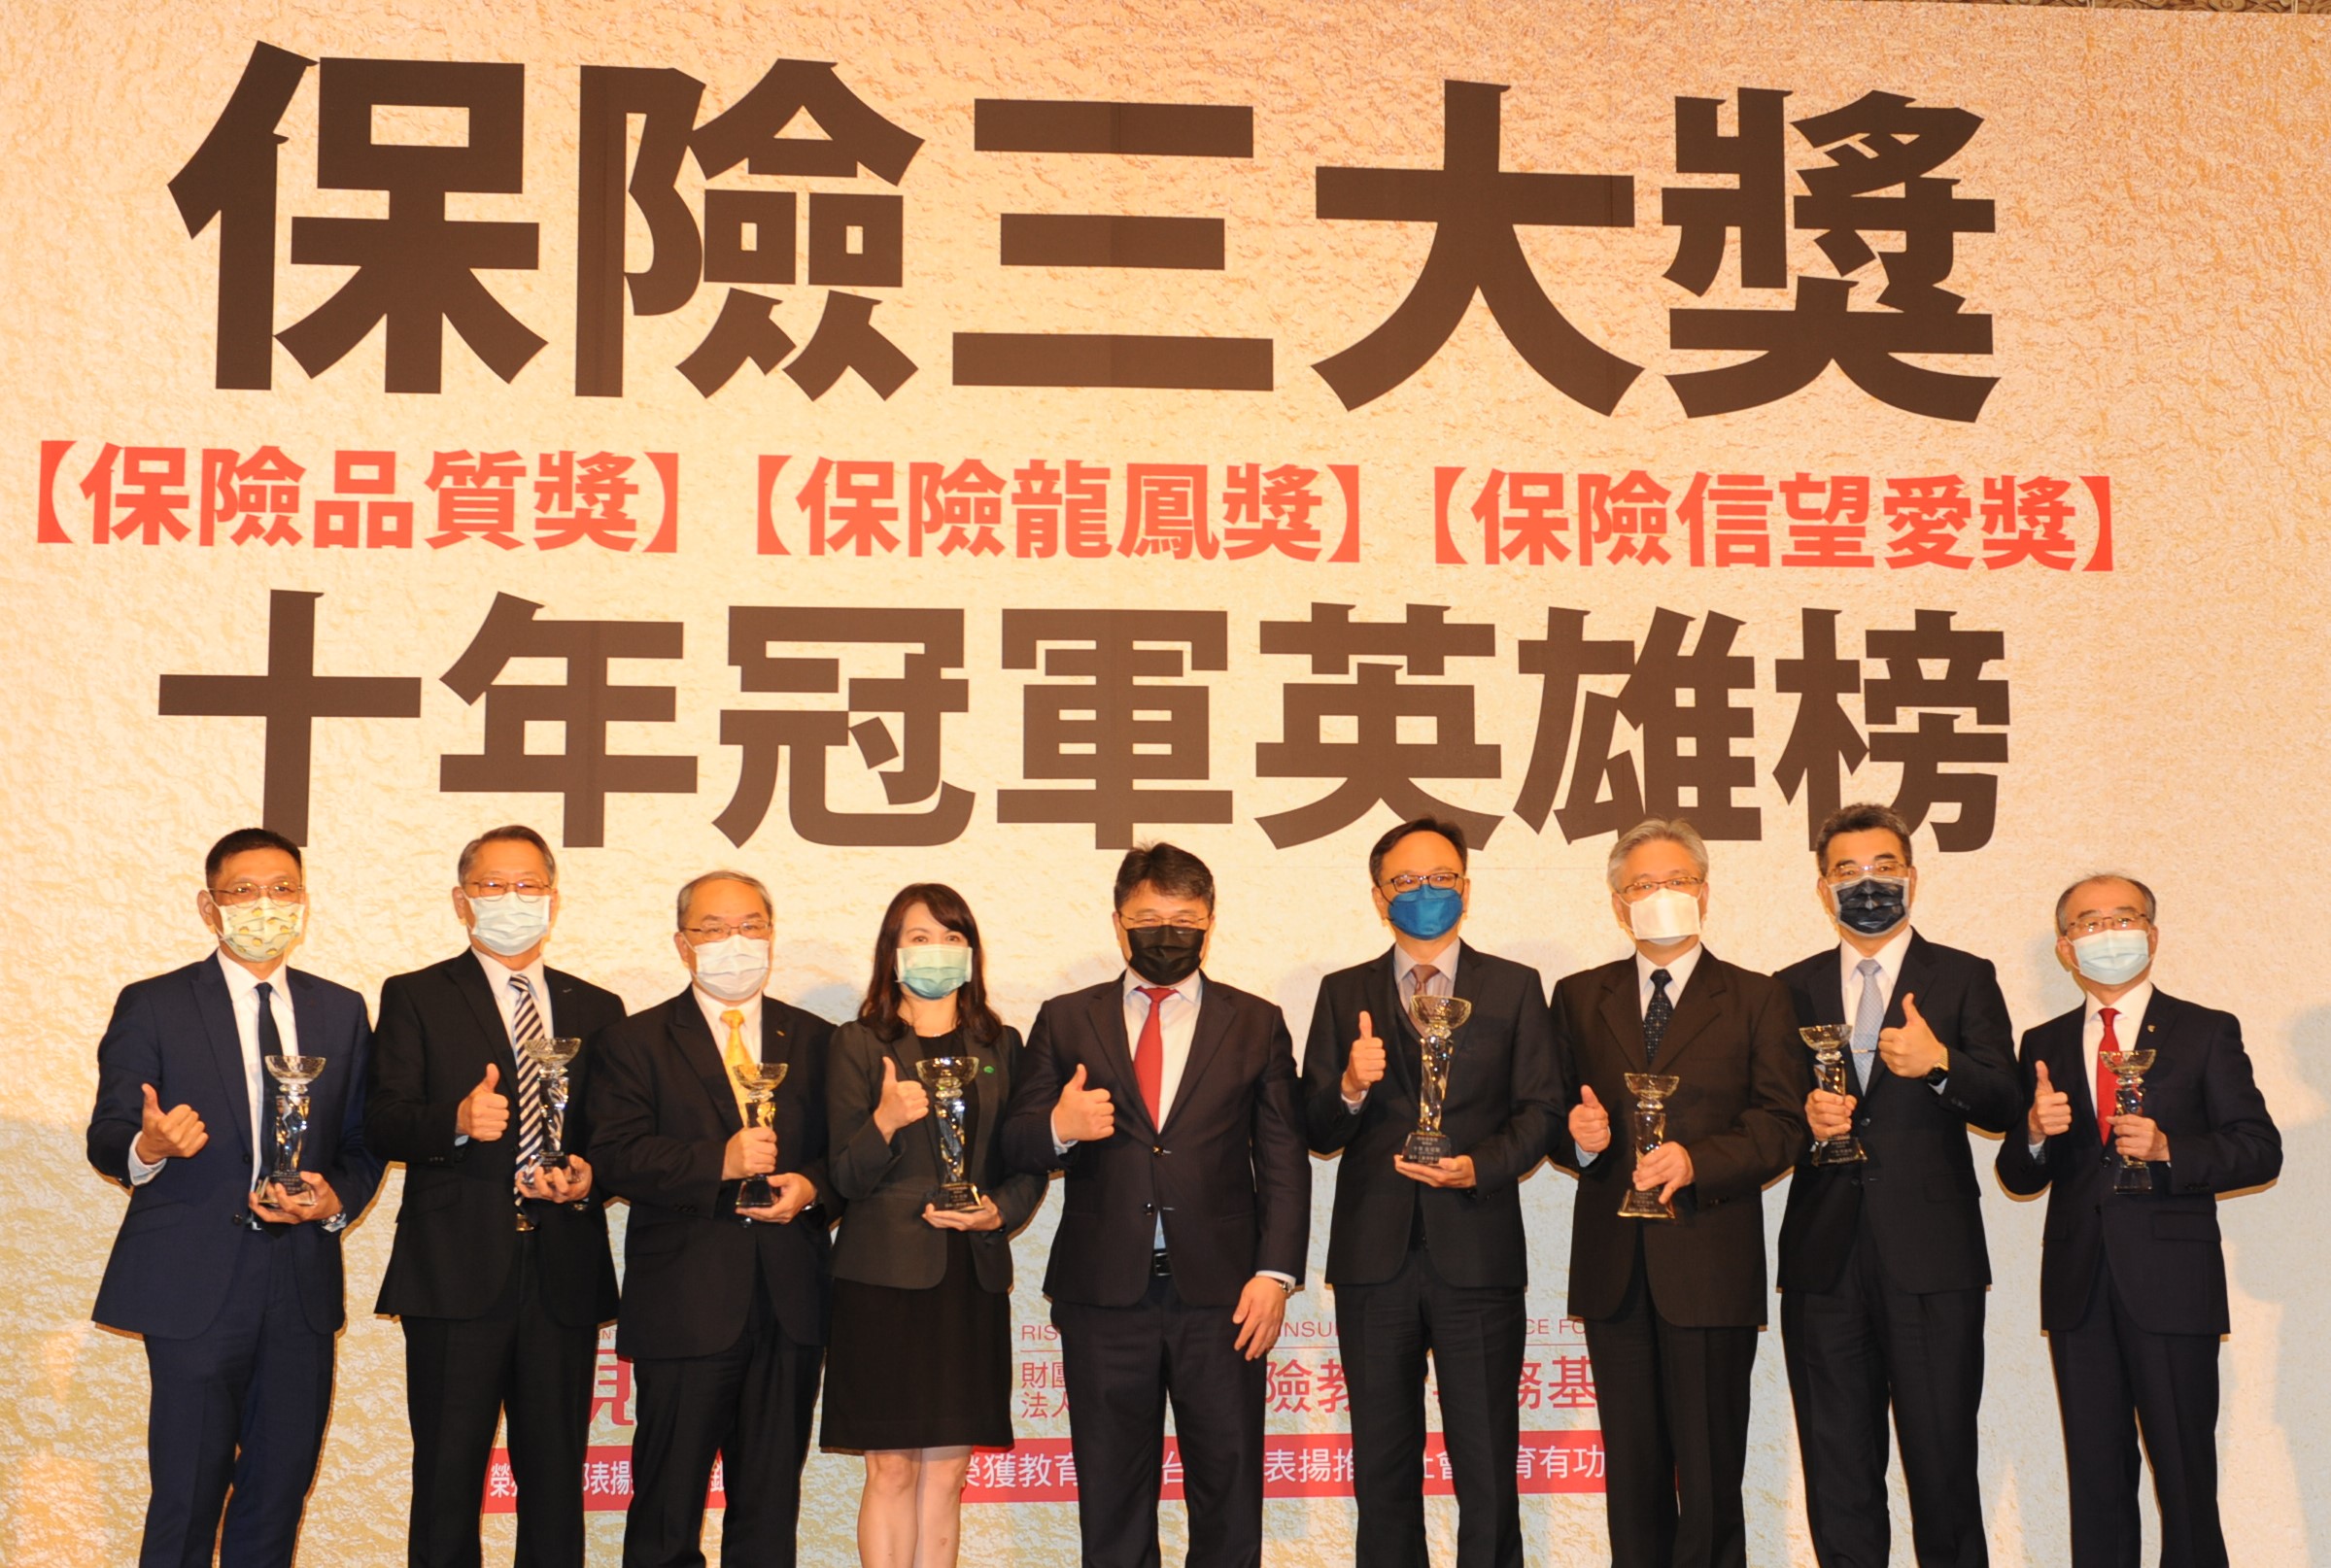 中華郵政公司壽險業務榮獲現代保險雜誌與現代保險教育事務基金會主辦之「保險品質獎」及「保險龍鳳獎」英雄榜之殊榮。